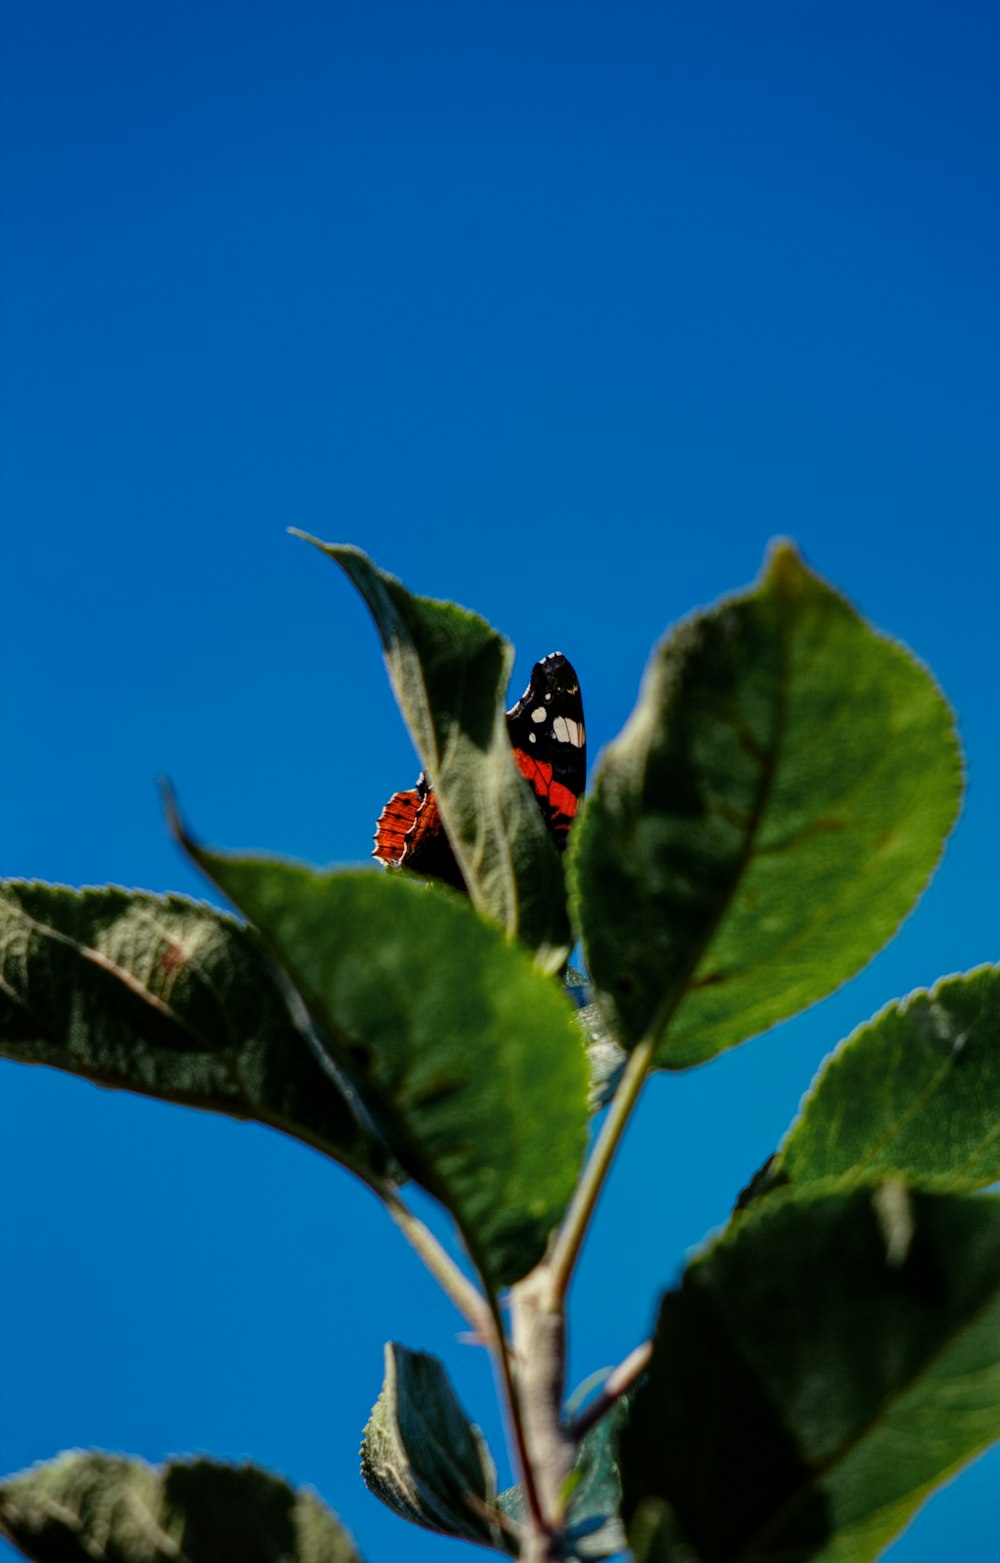 mariposa roja y negra posada en planta de hojas verdes